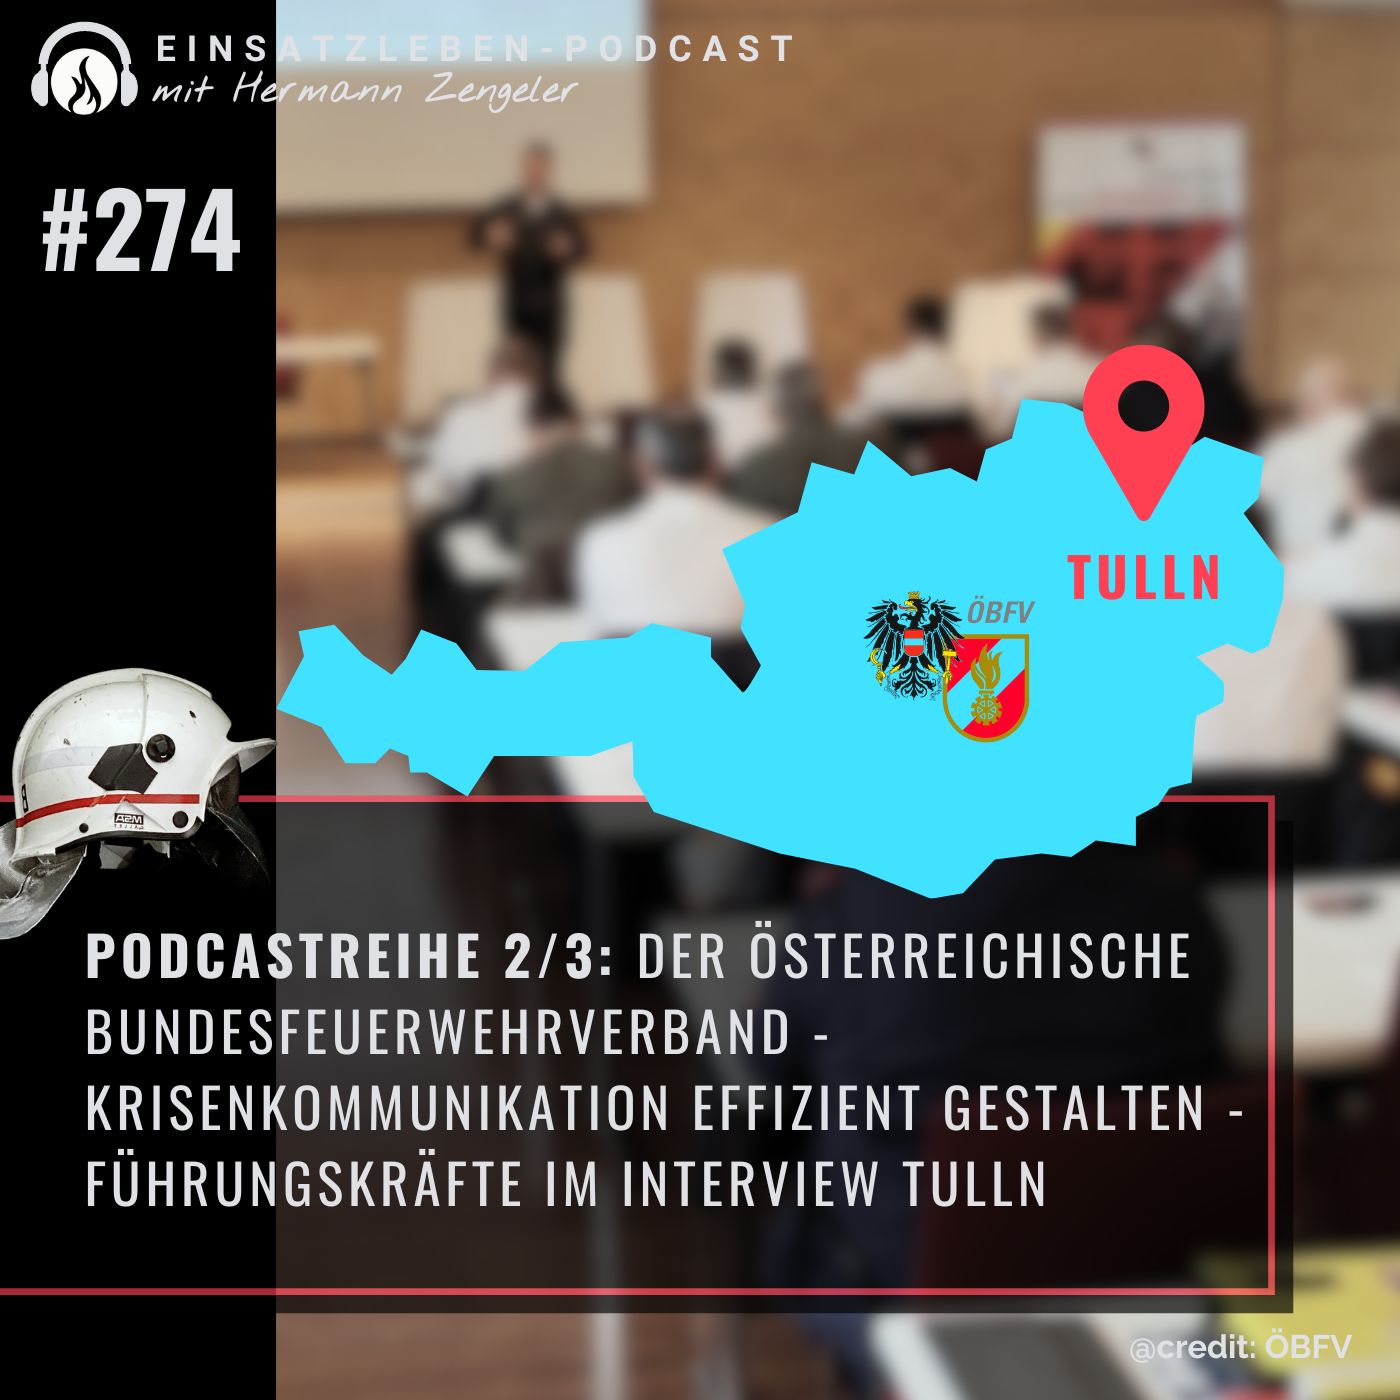 Podcastreihe 2/3: Der Österreichische Bundesfeuerwehrverband - Krisenkommunikation effizient gestalten aus Tulln